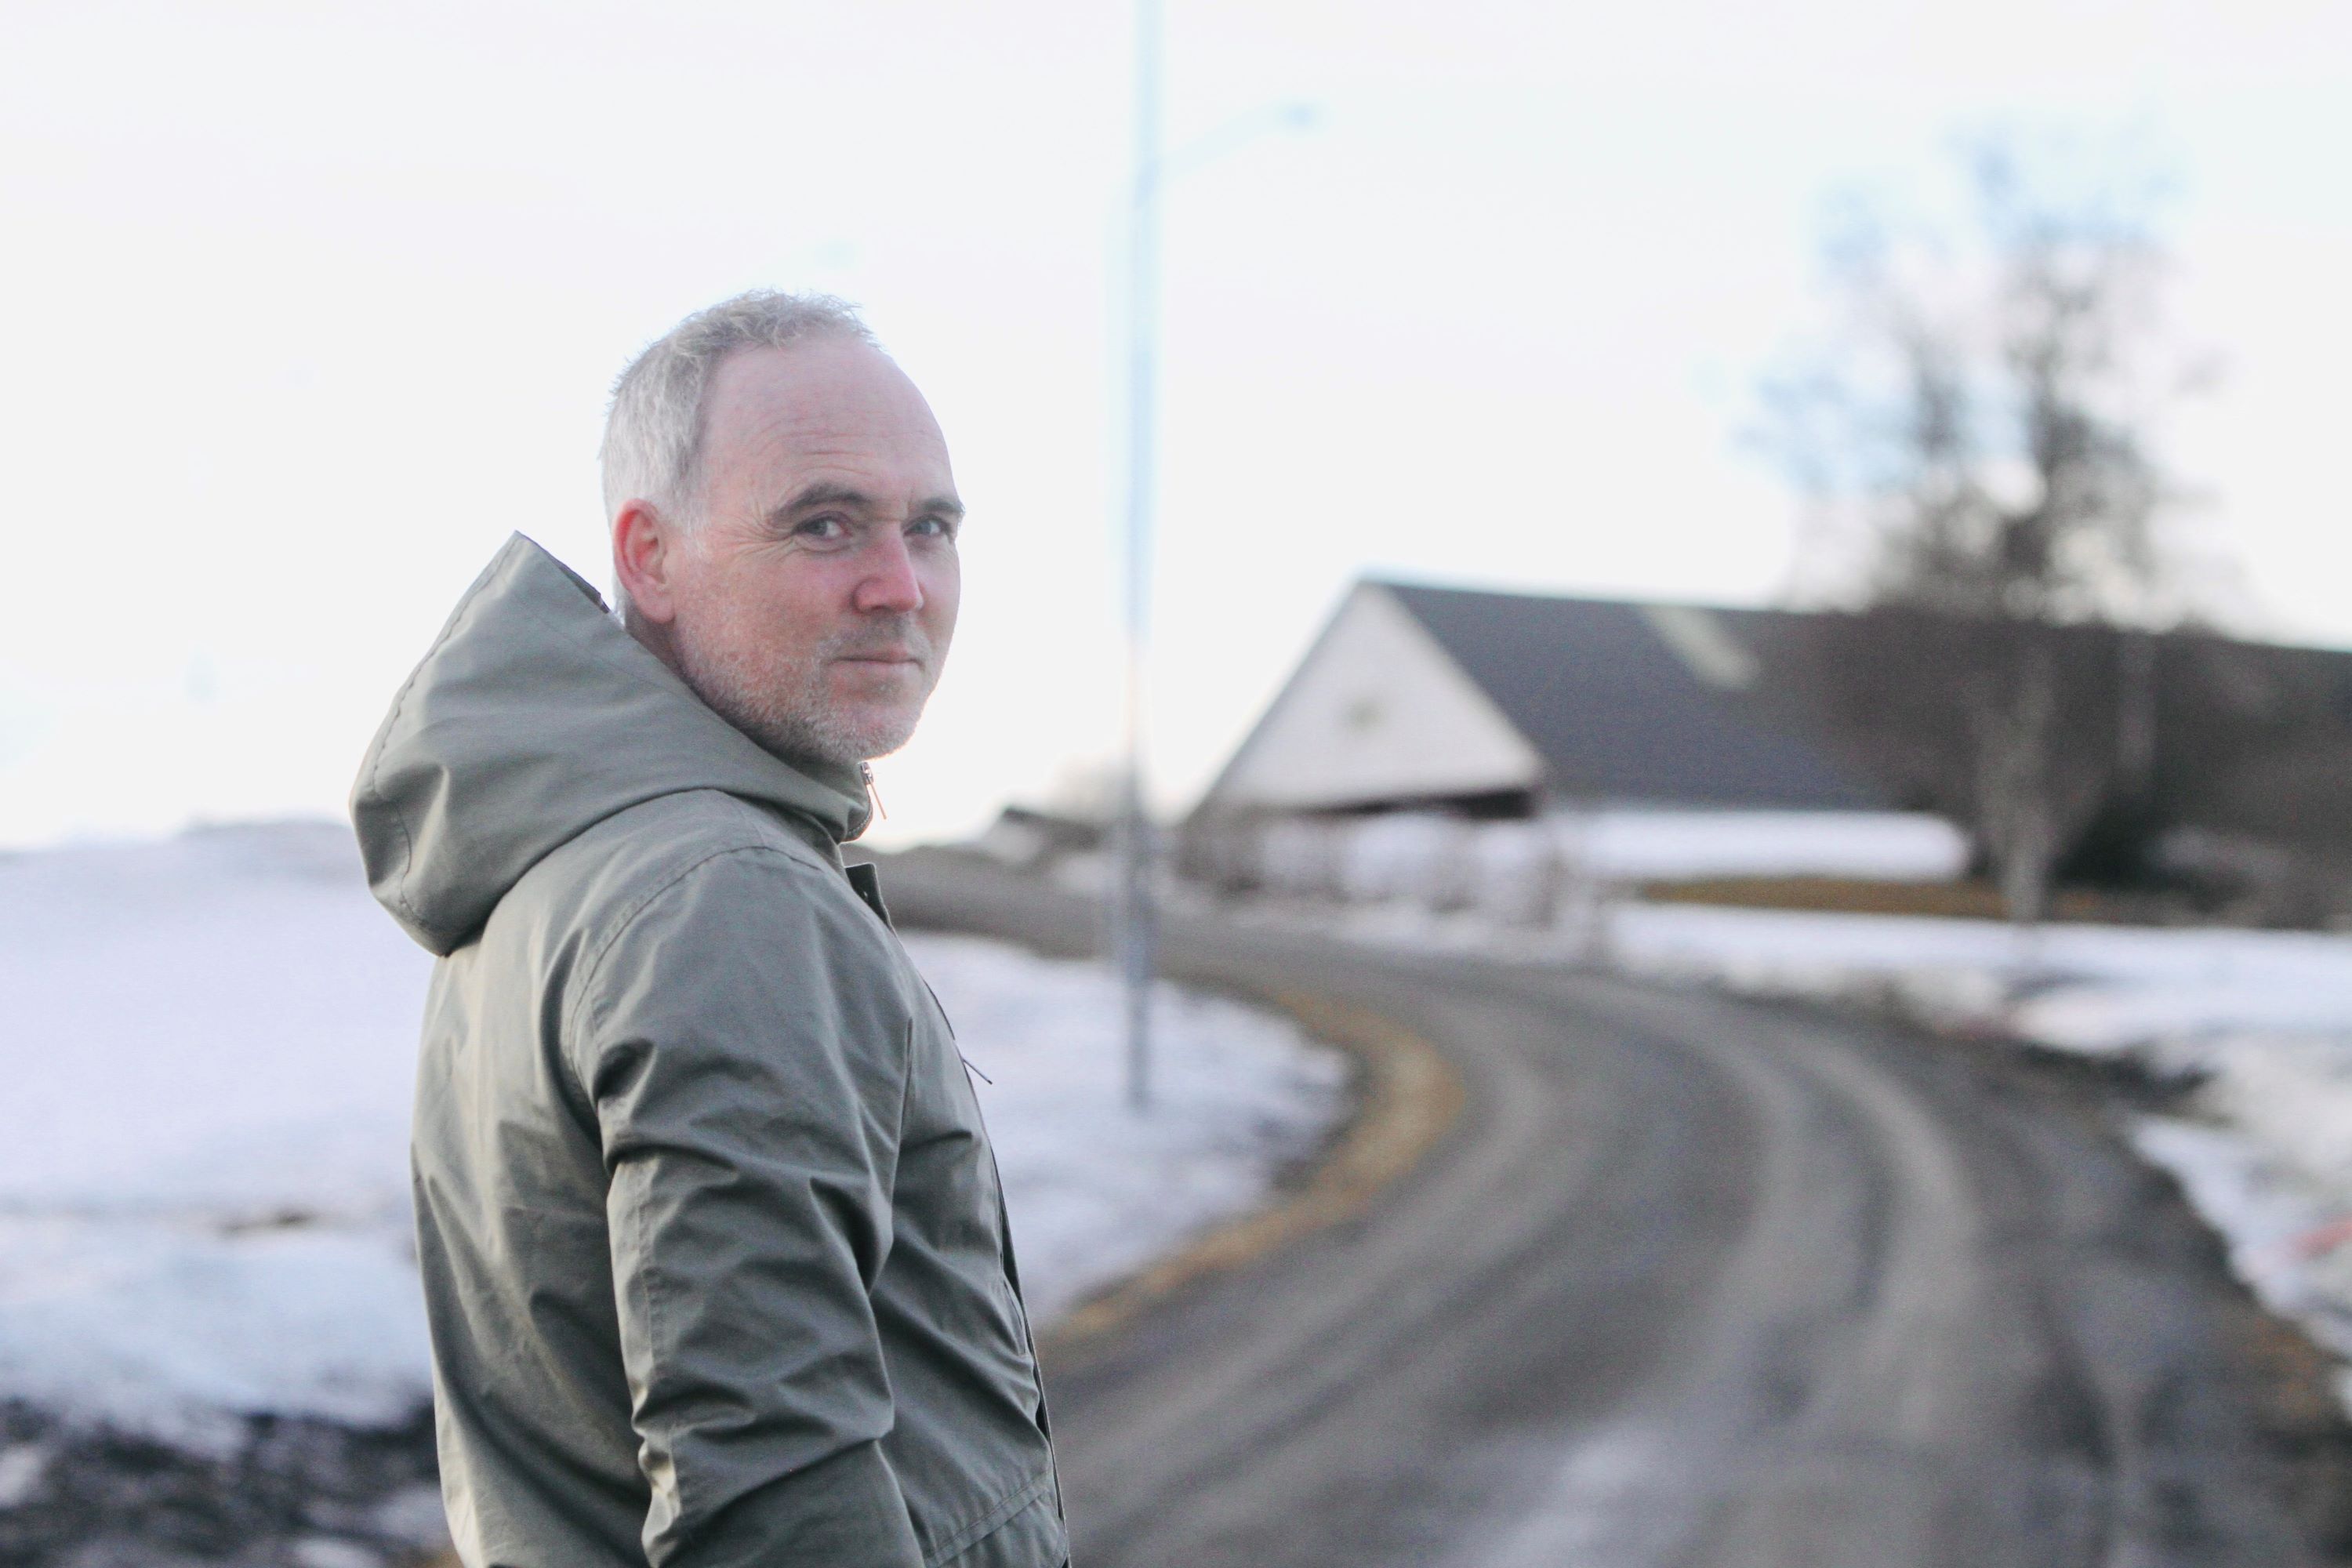 Klas Fritzon står på en landsväg med ett töande vinterlandskap i bakgrunden. Klas har grön parkas och tittar in i kameran.